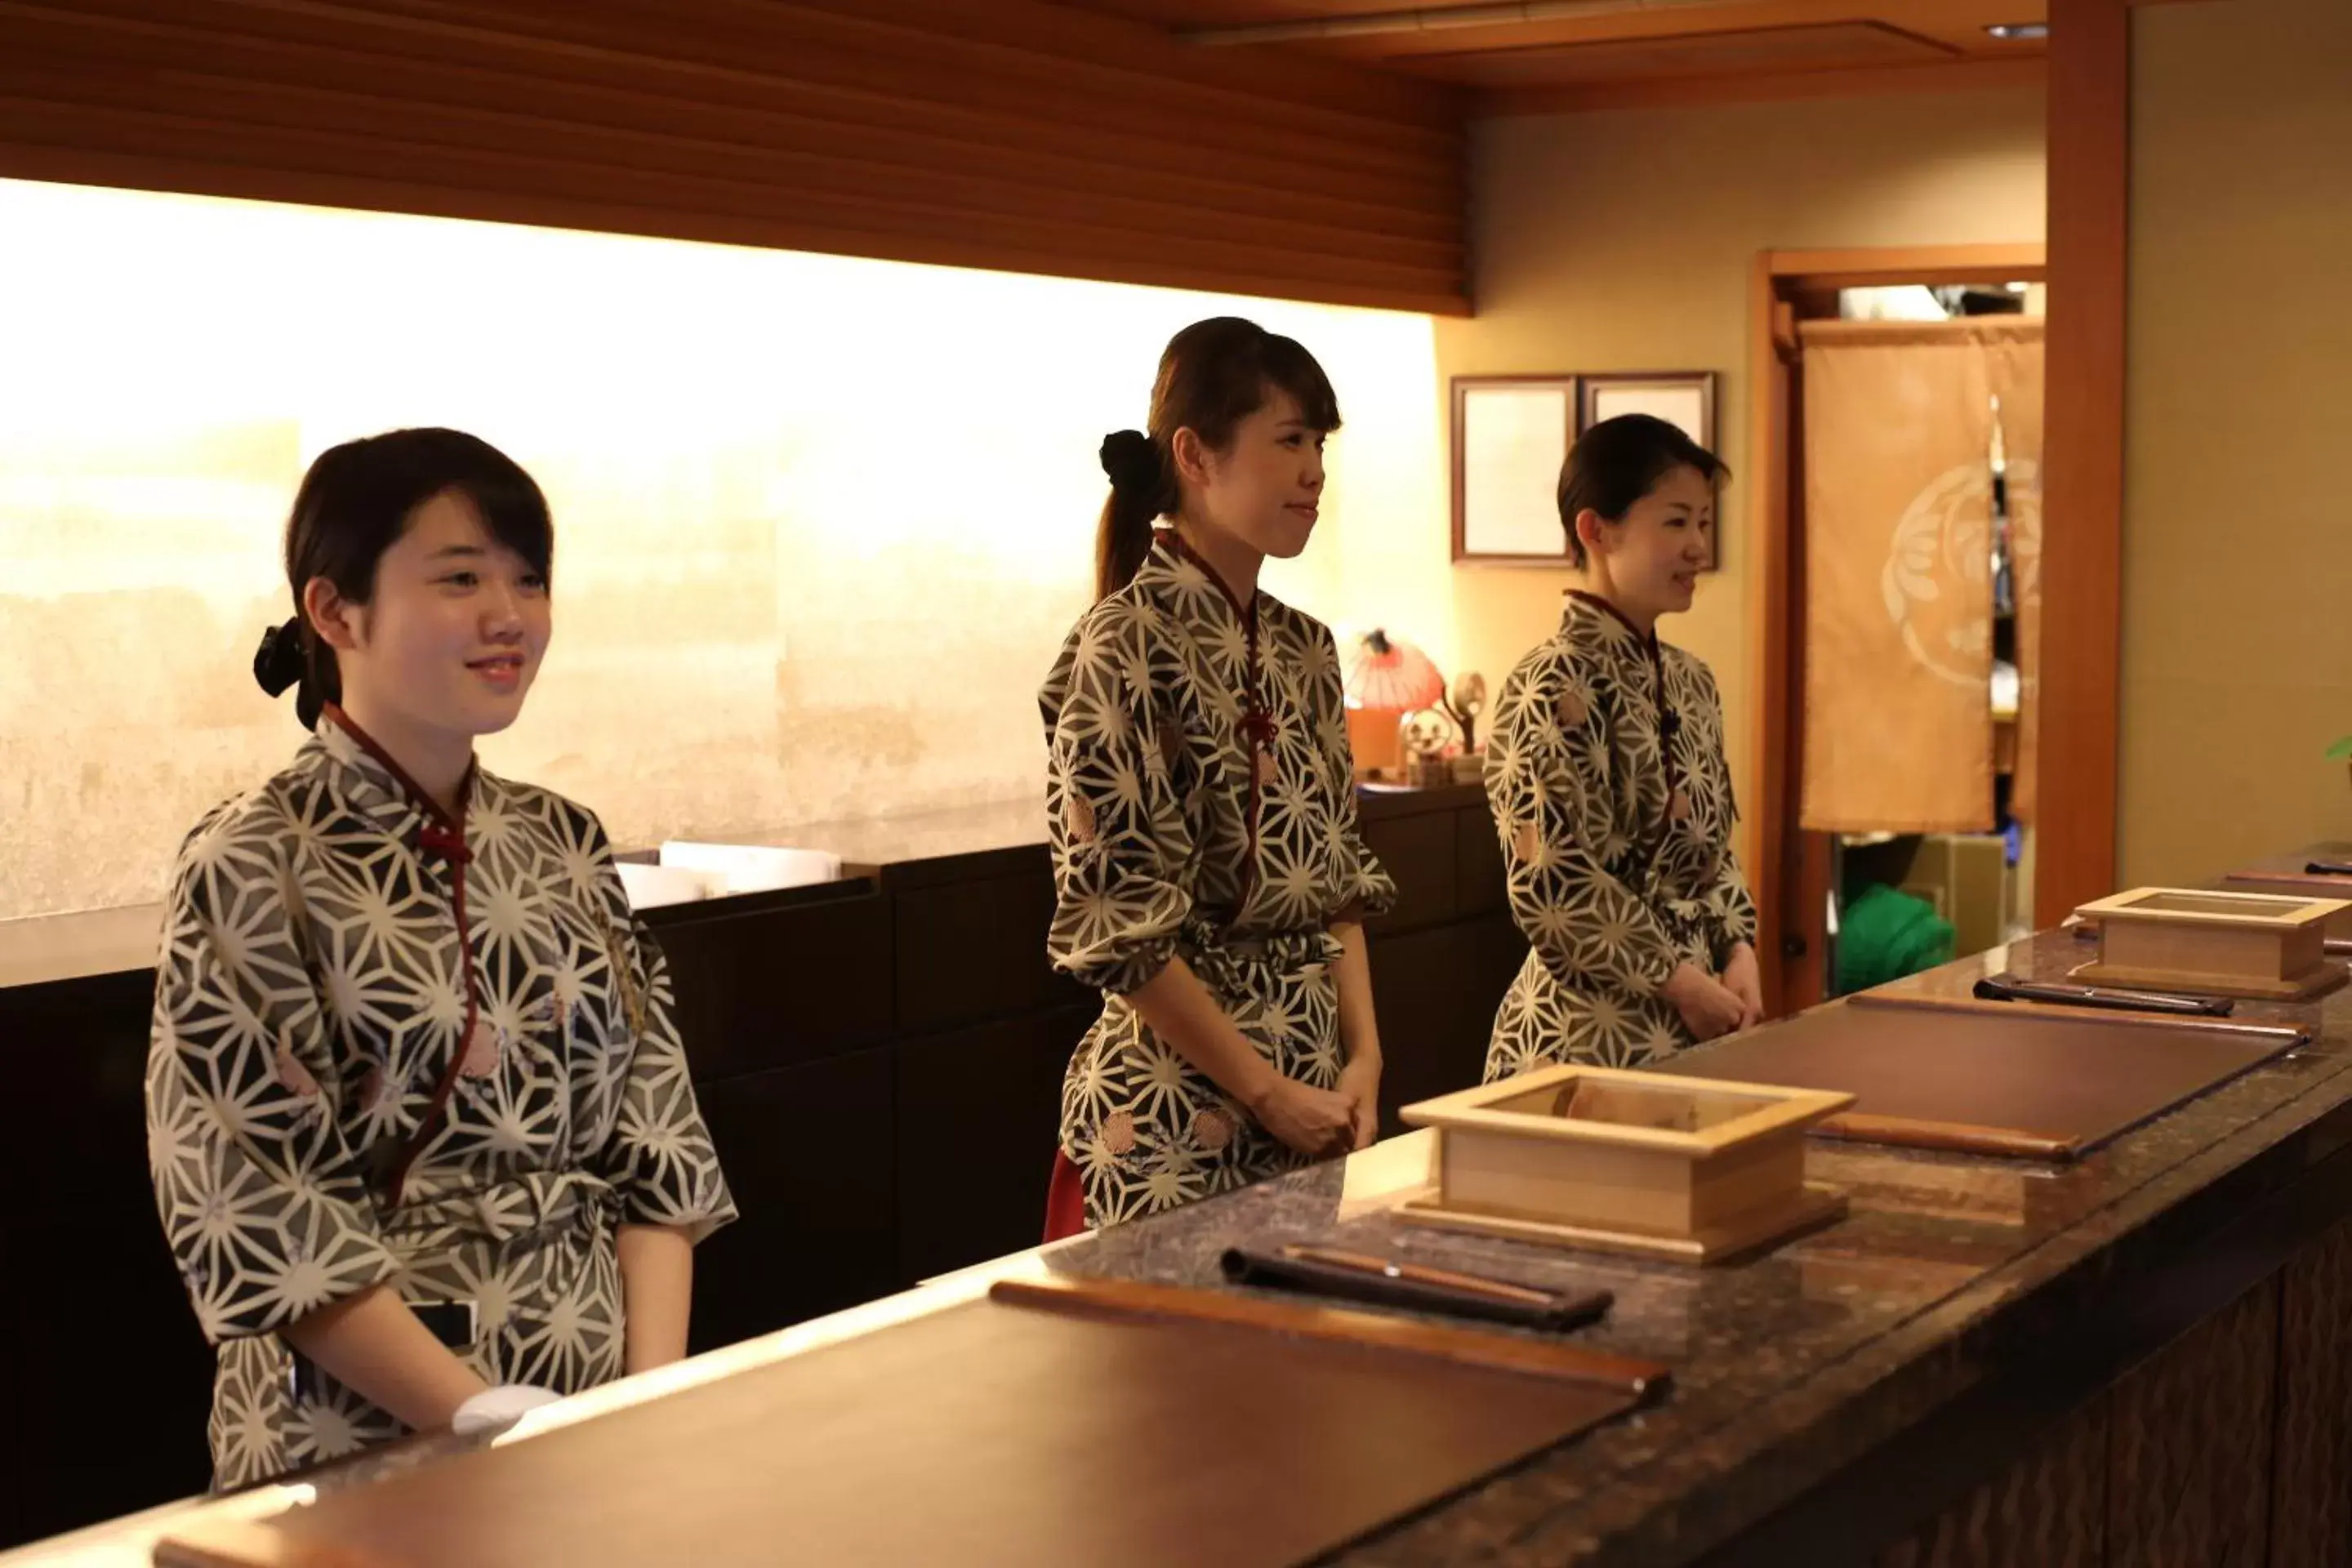 Lobby or reception in Kadensho, Arashiyama Onsen, Kyoto - Kyoritsu Resort